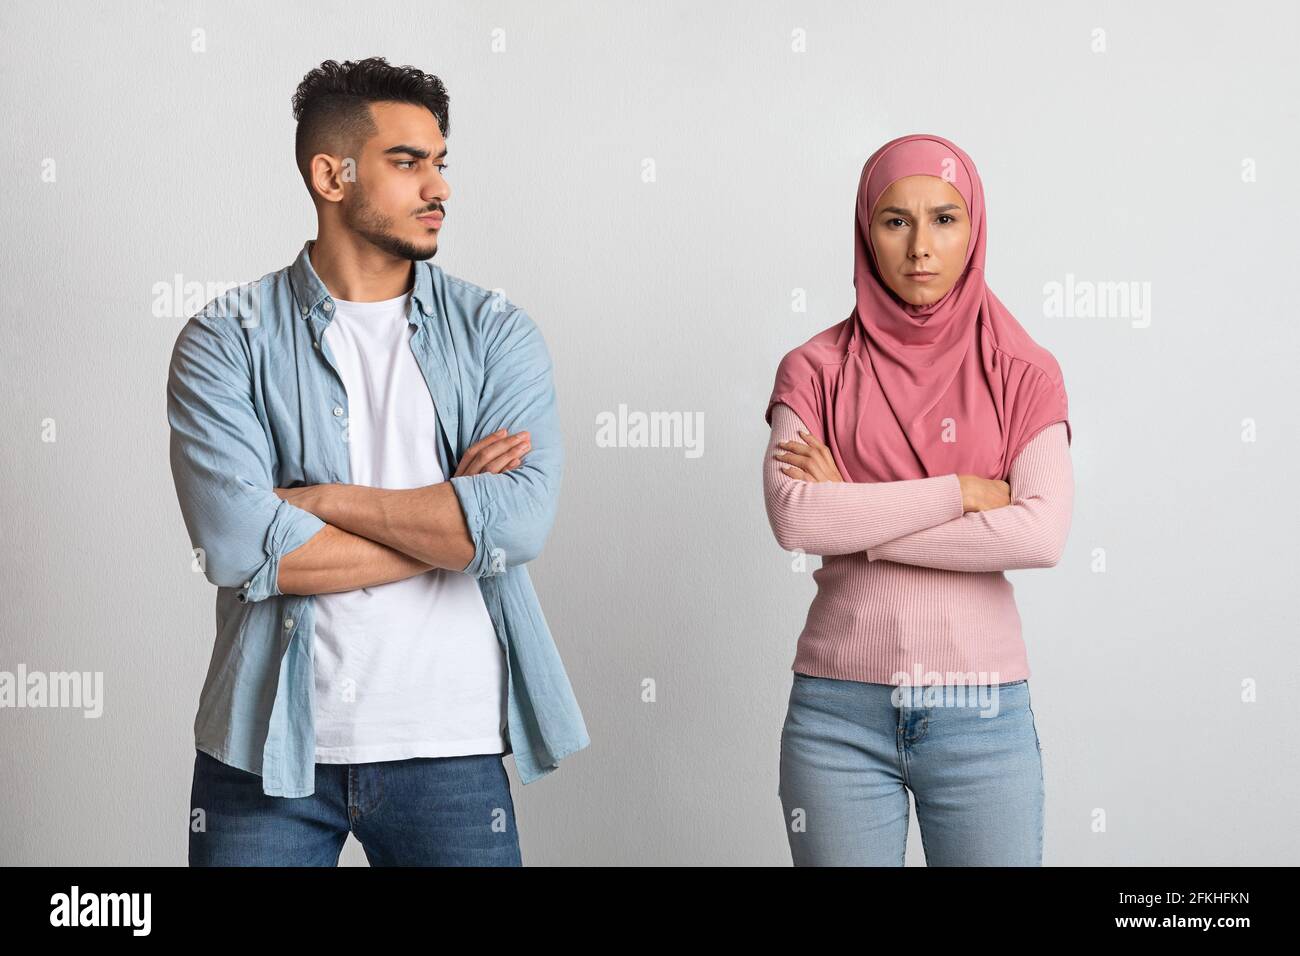 Triste homme arabe regardant une femme musulmane offensé dans le hijab après la querelle Banque D'Images